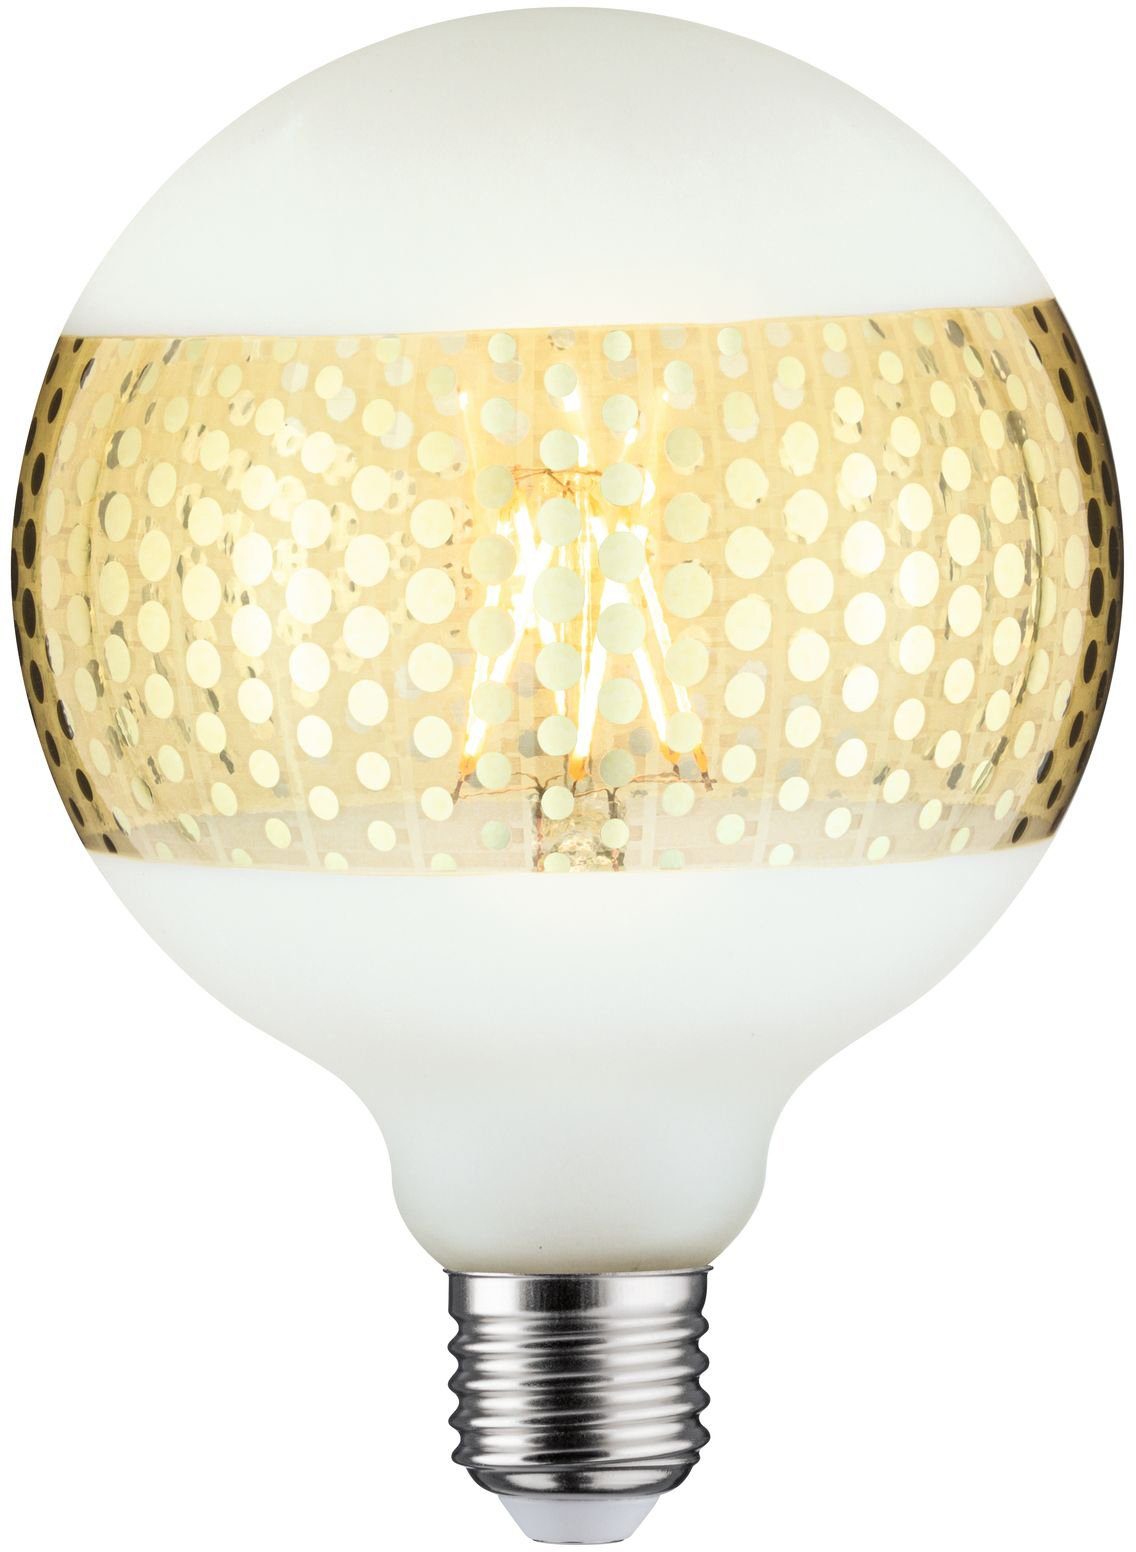 Paulmann »Globe 125mm Ringspiegel goldfarben gepunktet« LED Leuchtmittel, E27, 1 Stück, Warmweiß online kaufen | OTTO